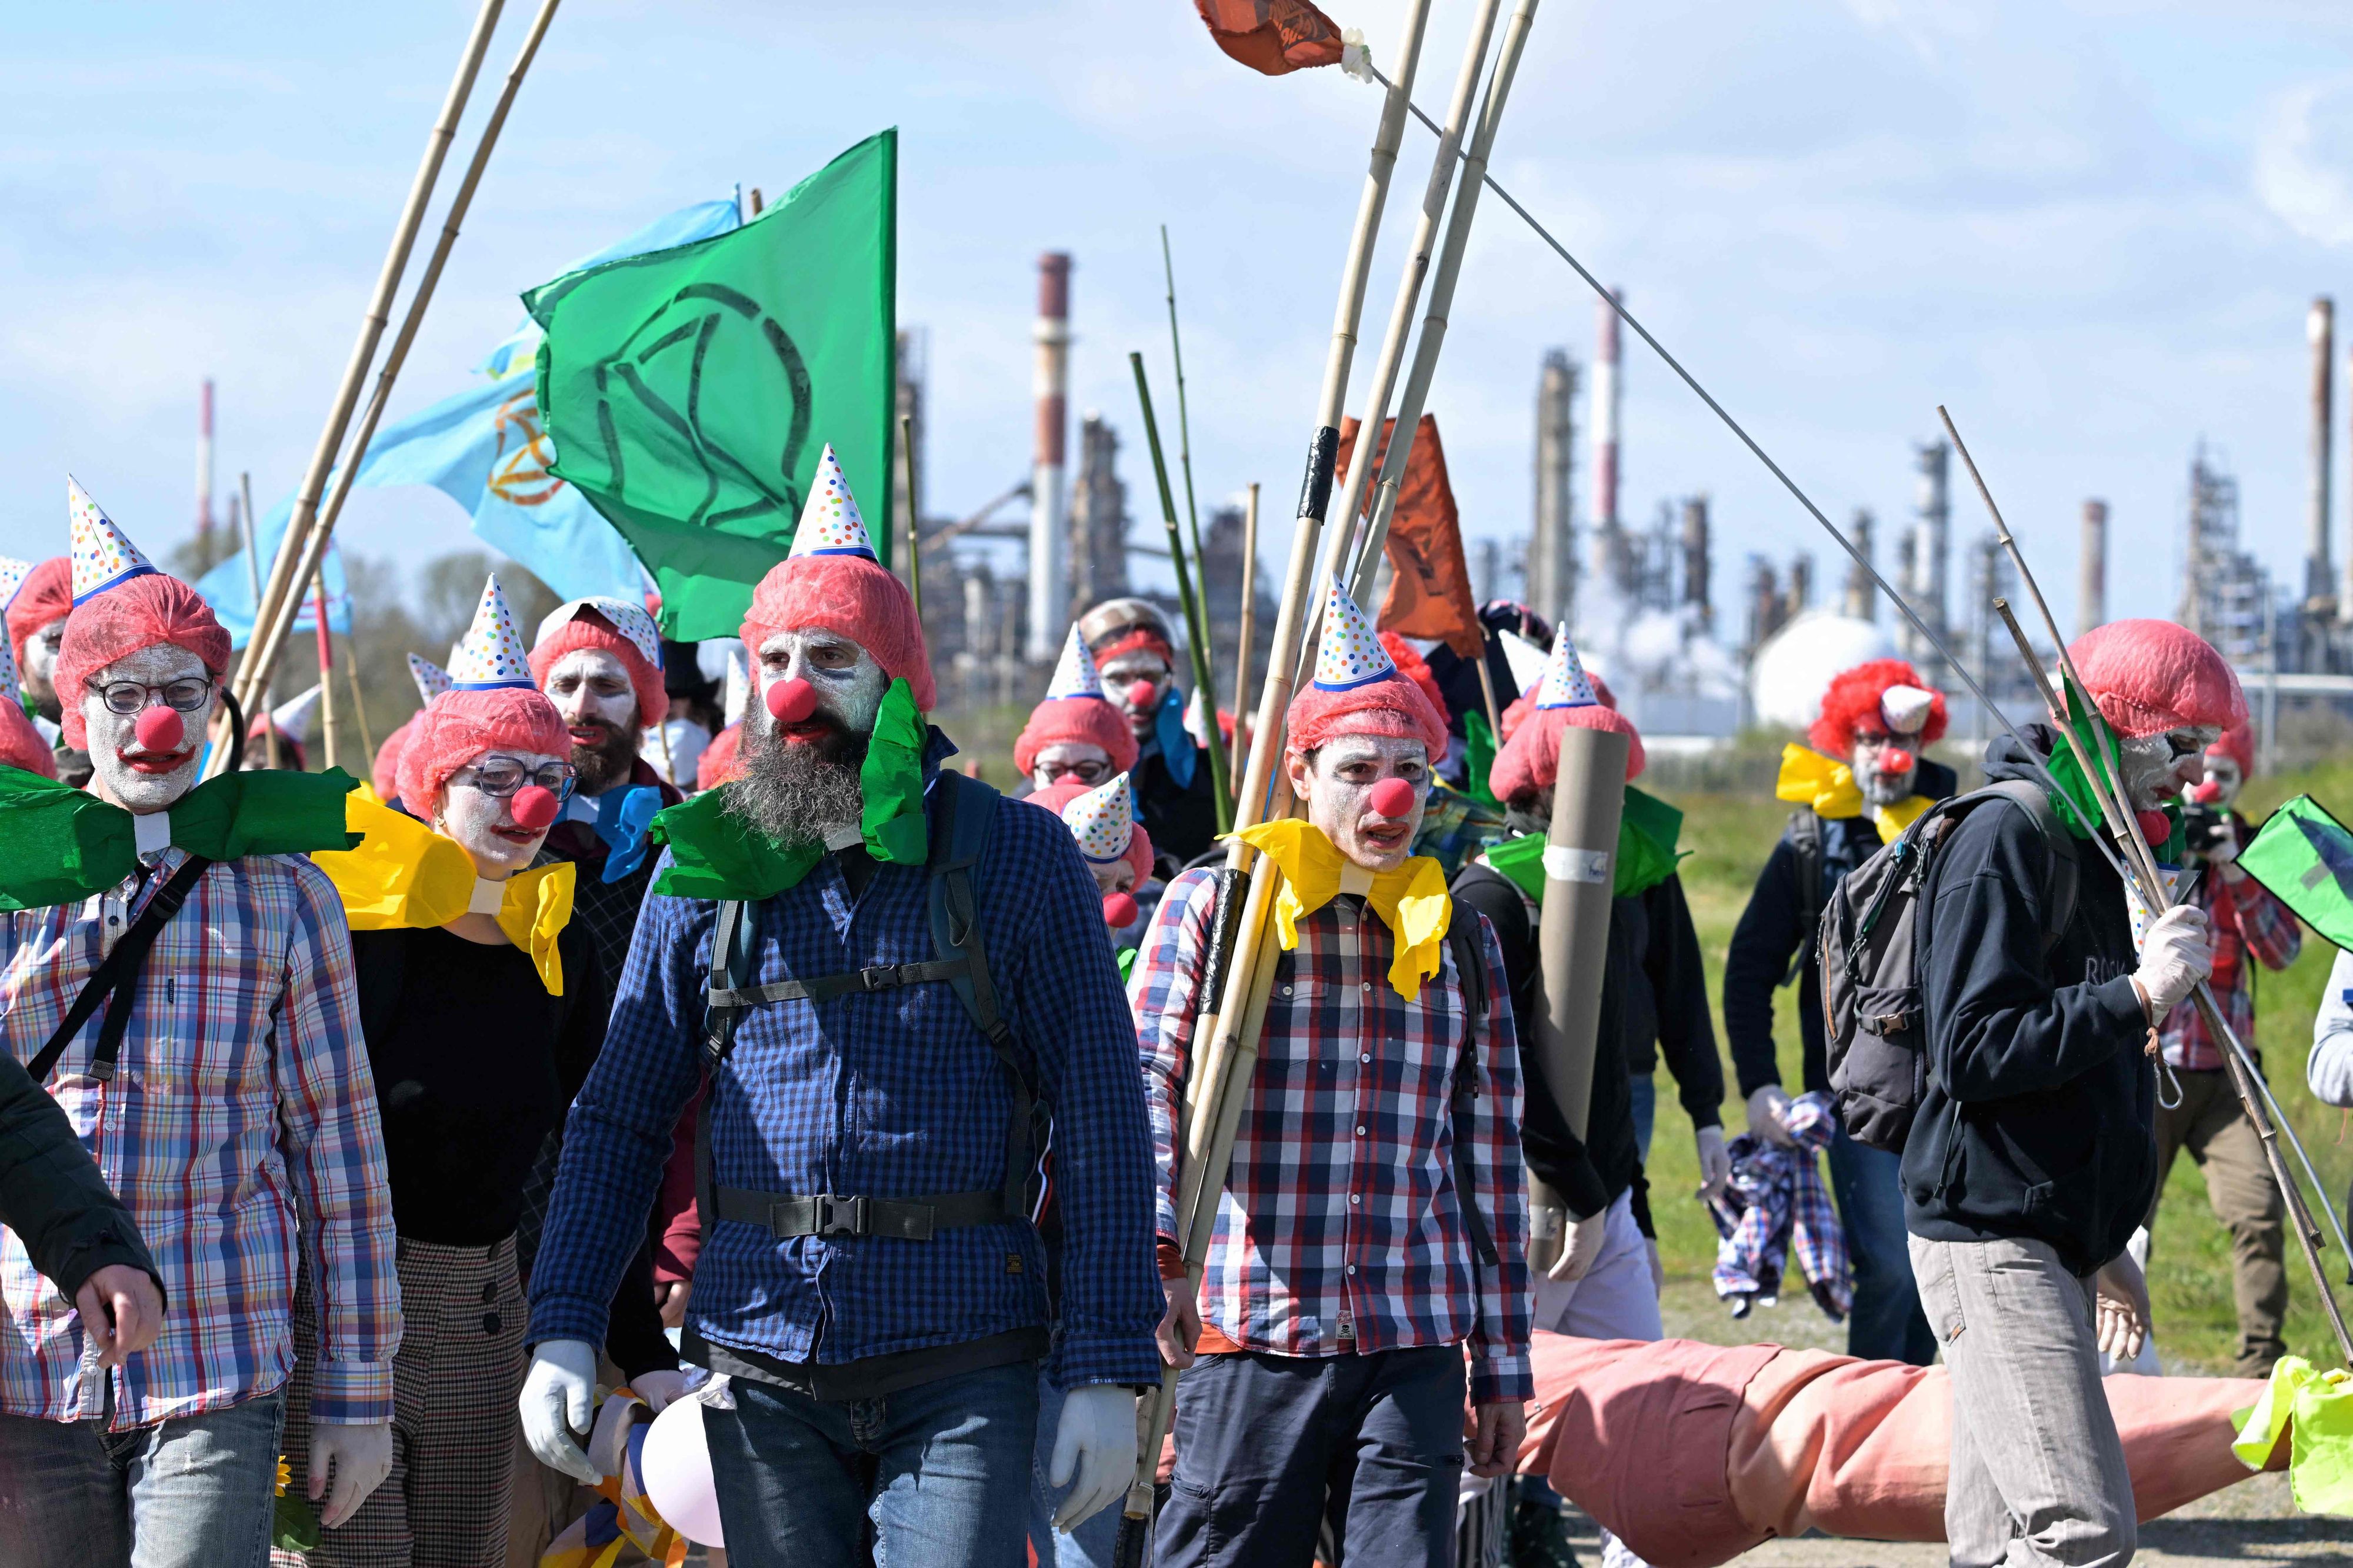 Des activistes déguisés en clowns pénètrent à l'intérieur d'une raffinerie Total